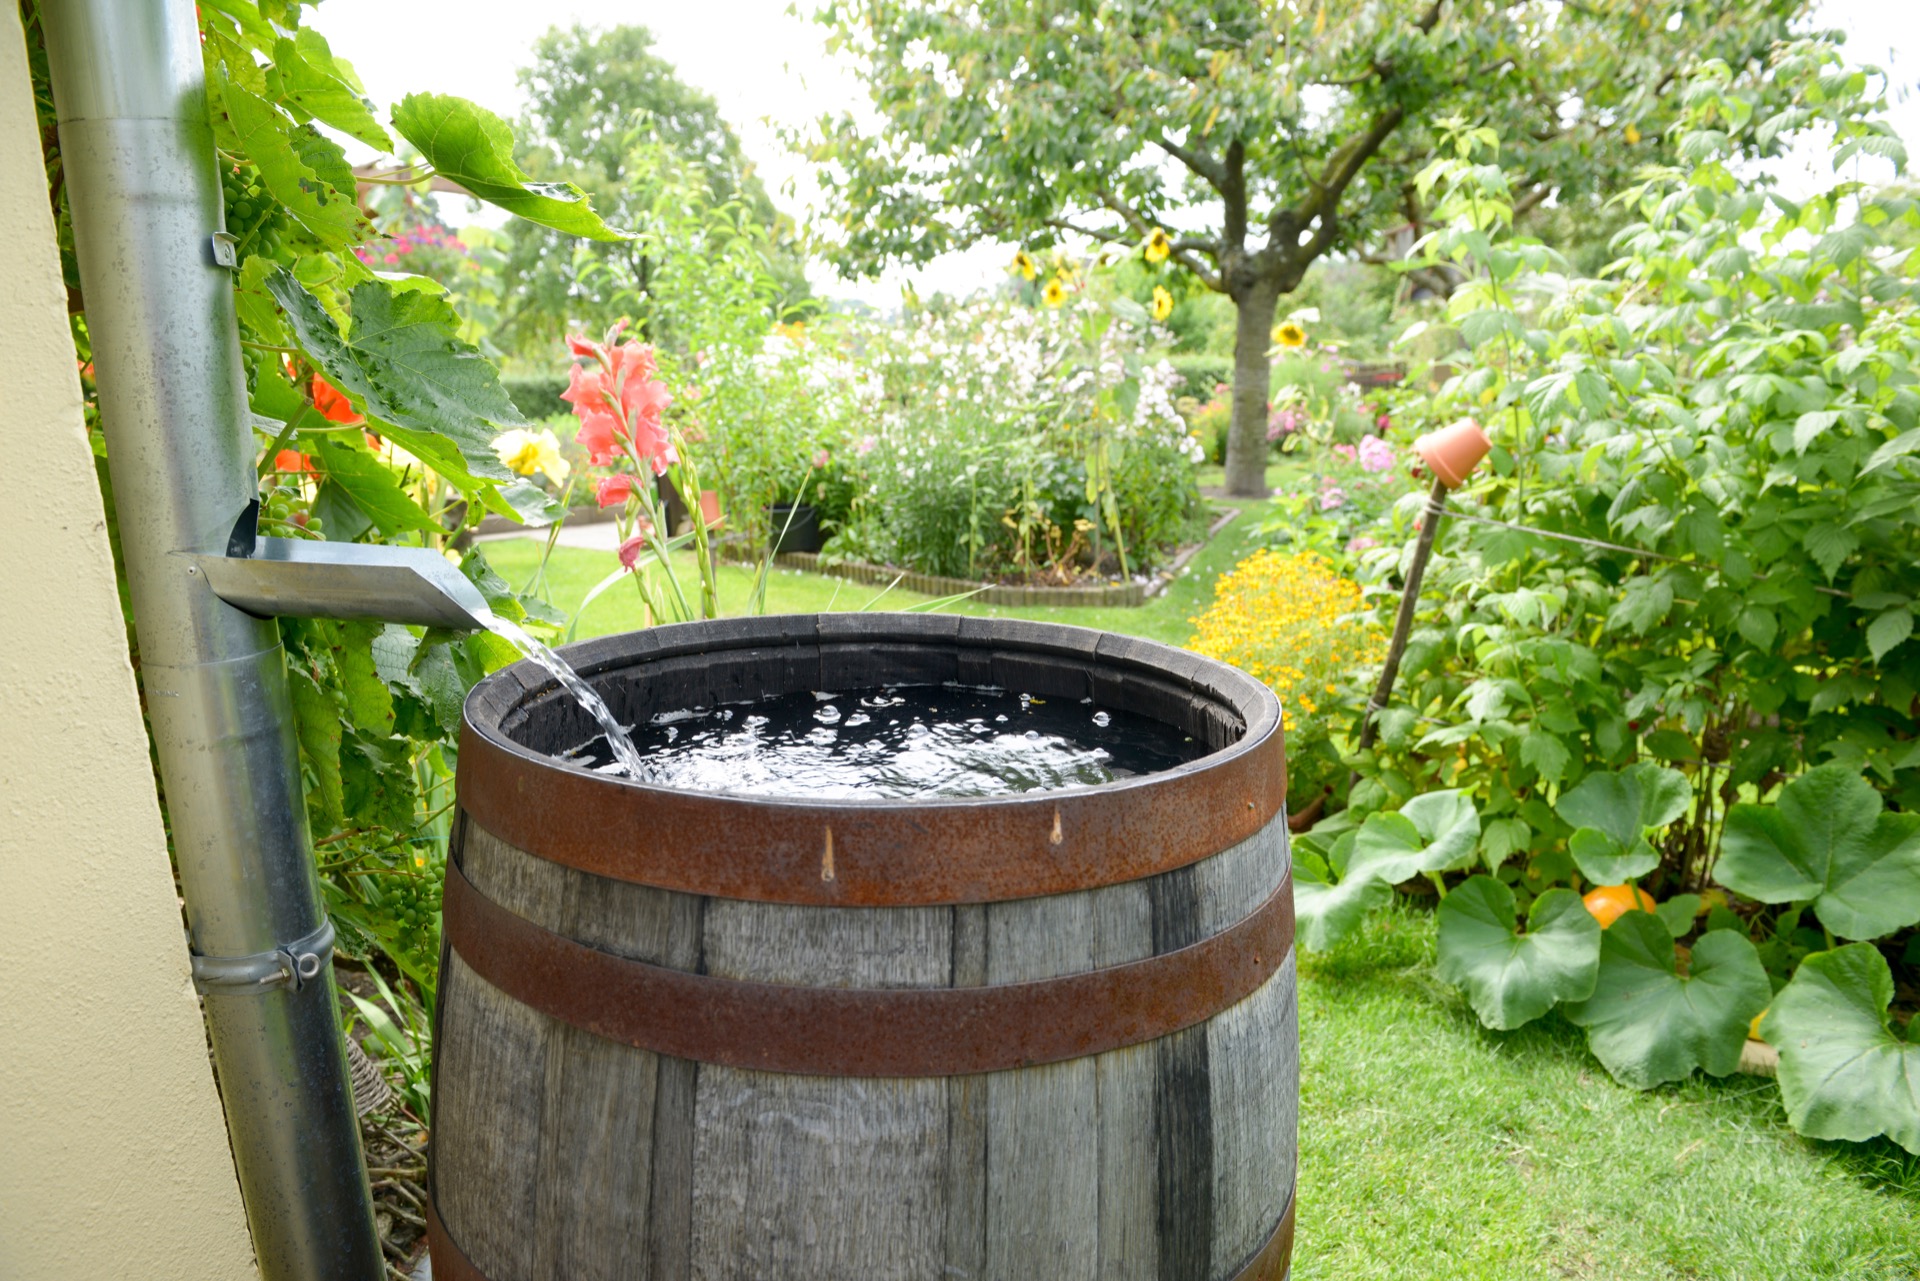 Avoir une cuve de récupération des eaux de pluie dans son jardin s'avère très utile et permet d'économiser sur la facture d'eau. © Schulzie, Adobe Stock